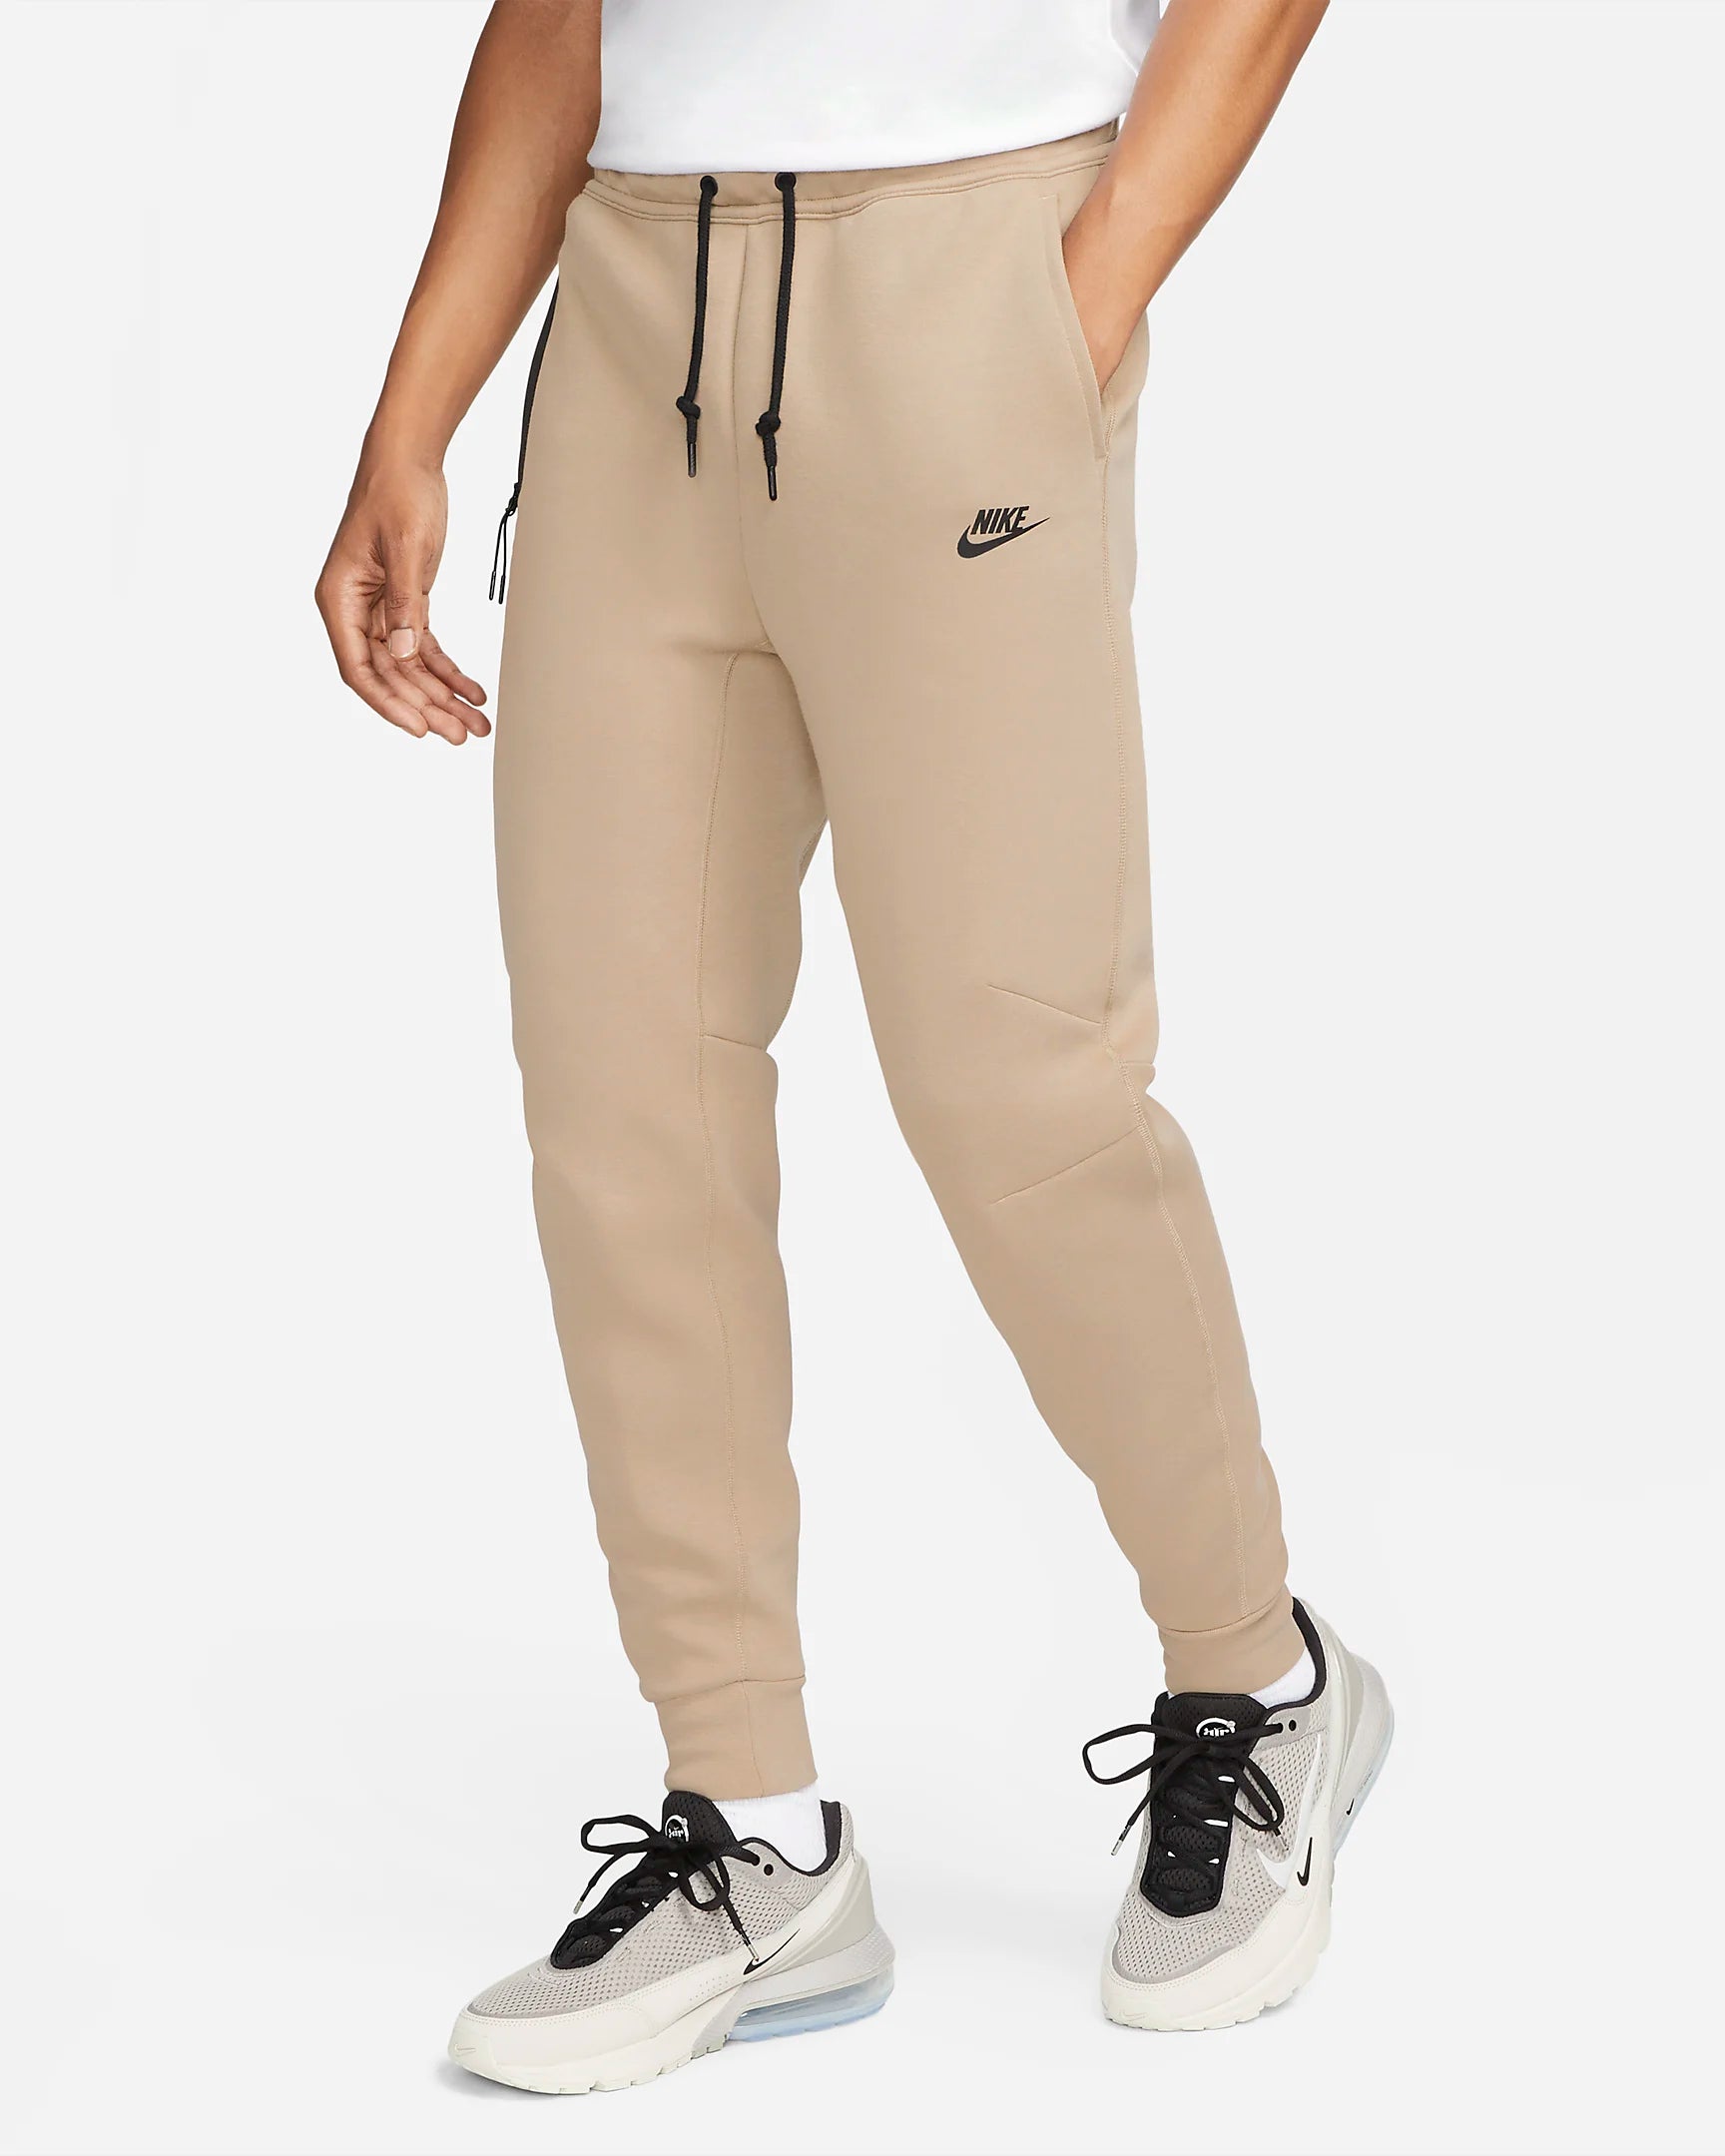 Pantaloni Nike Tech Fleece - Marrone